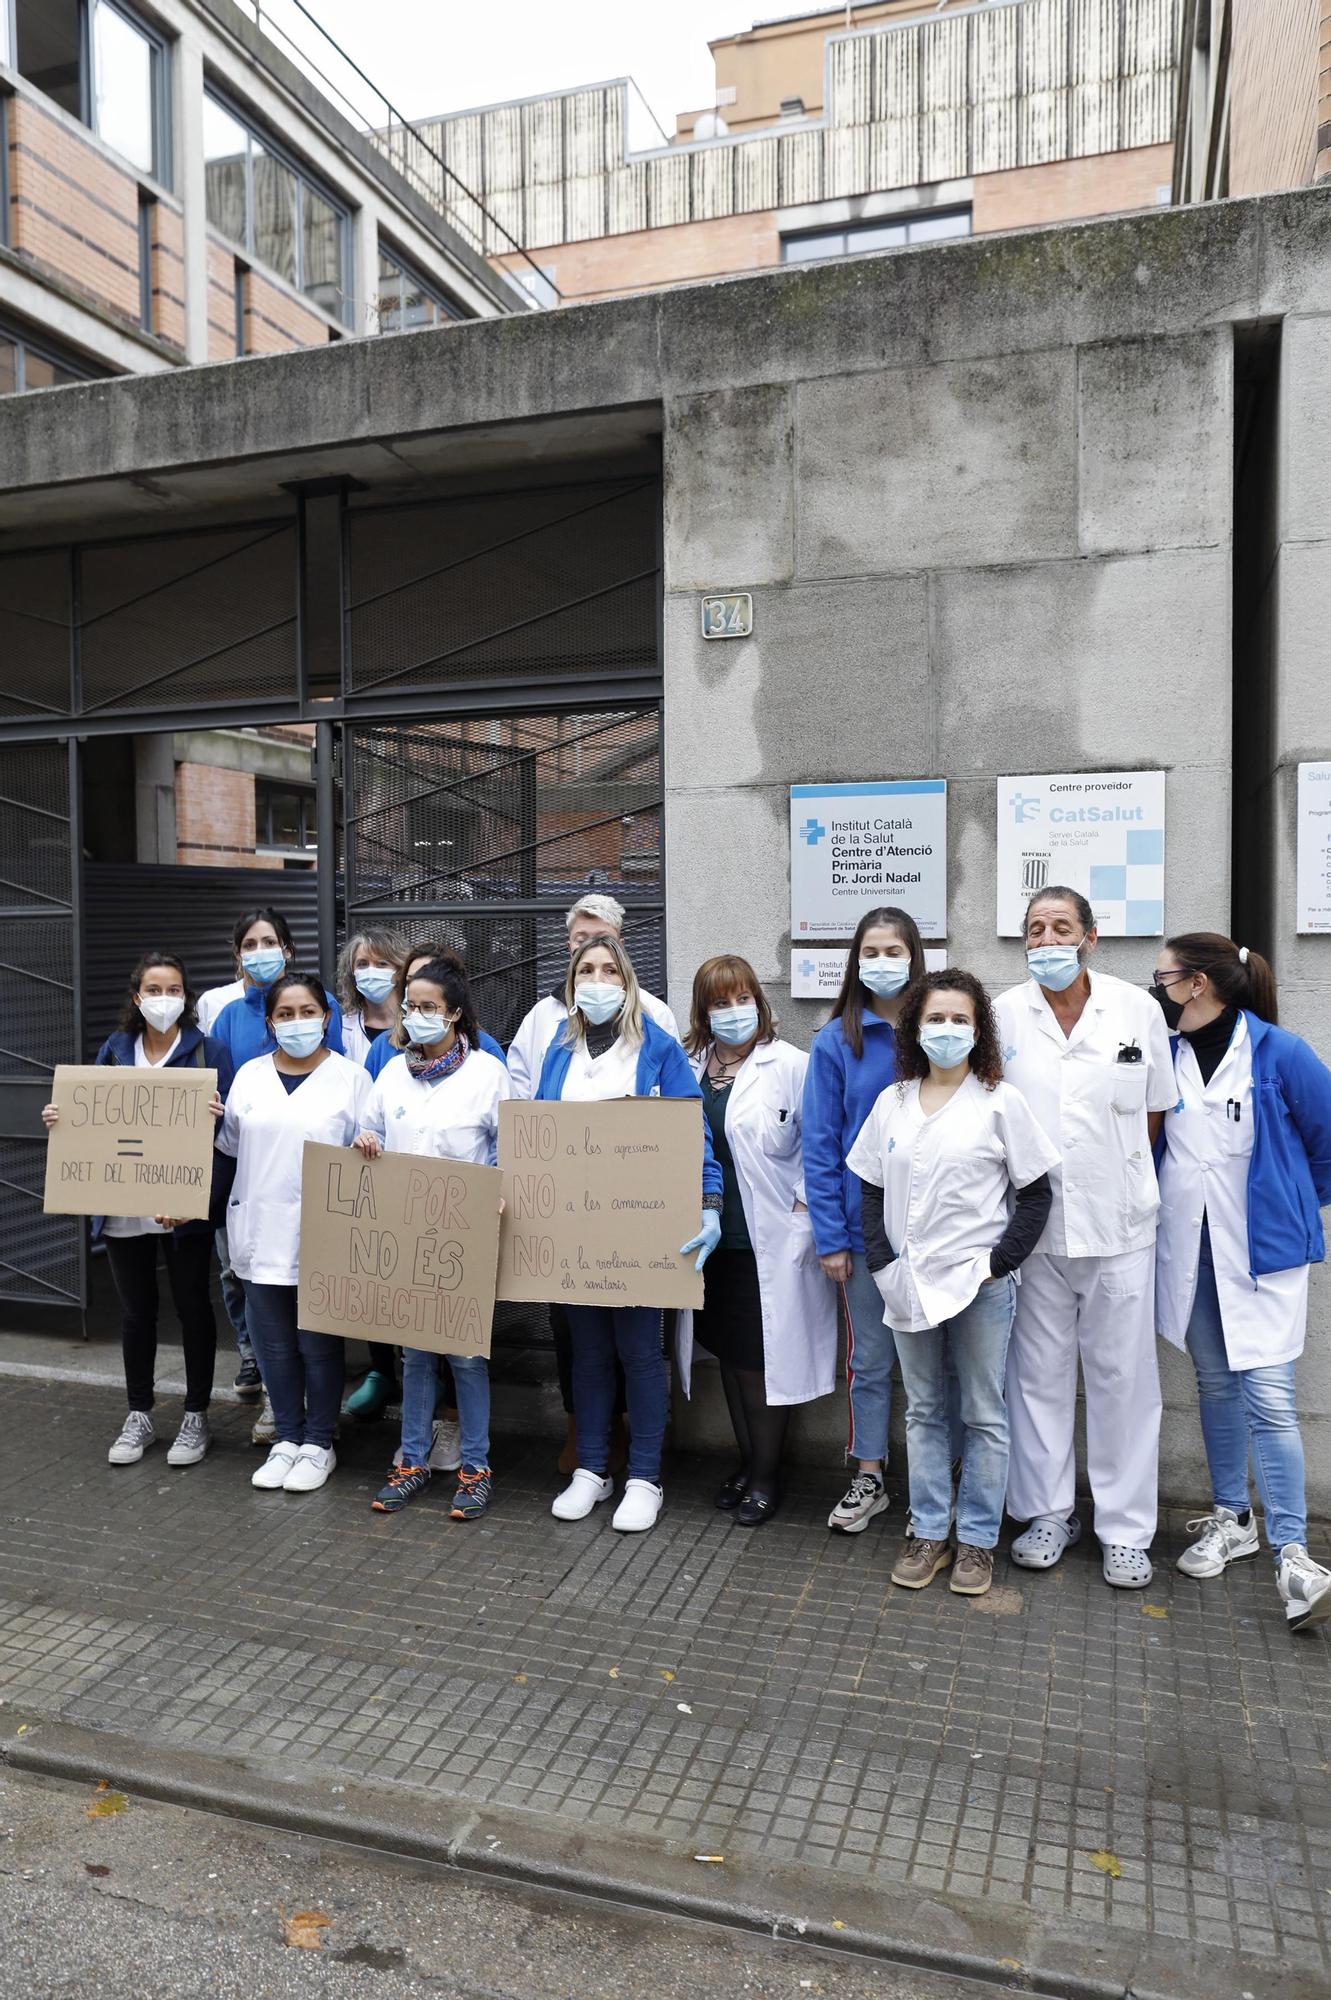 Treballadors dels CAPs de Salt protesten contra la inseguretat que viuen